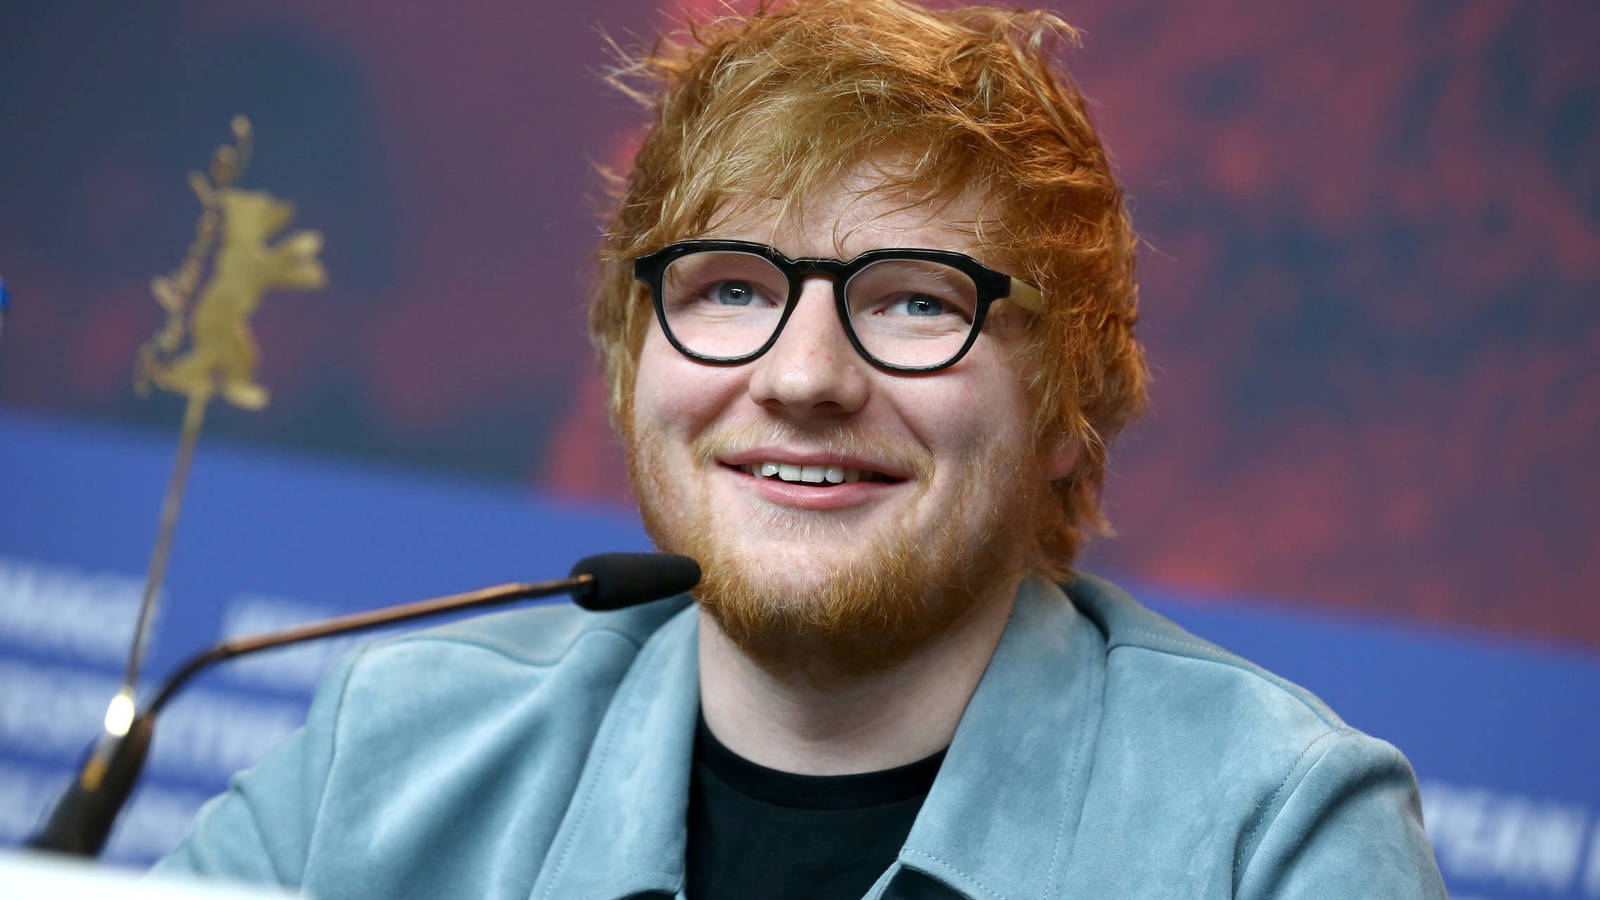 Ed Sheeran niega en tribunales haber hecho plagio de “Shape of you”